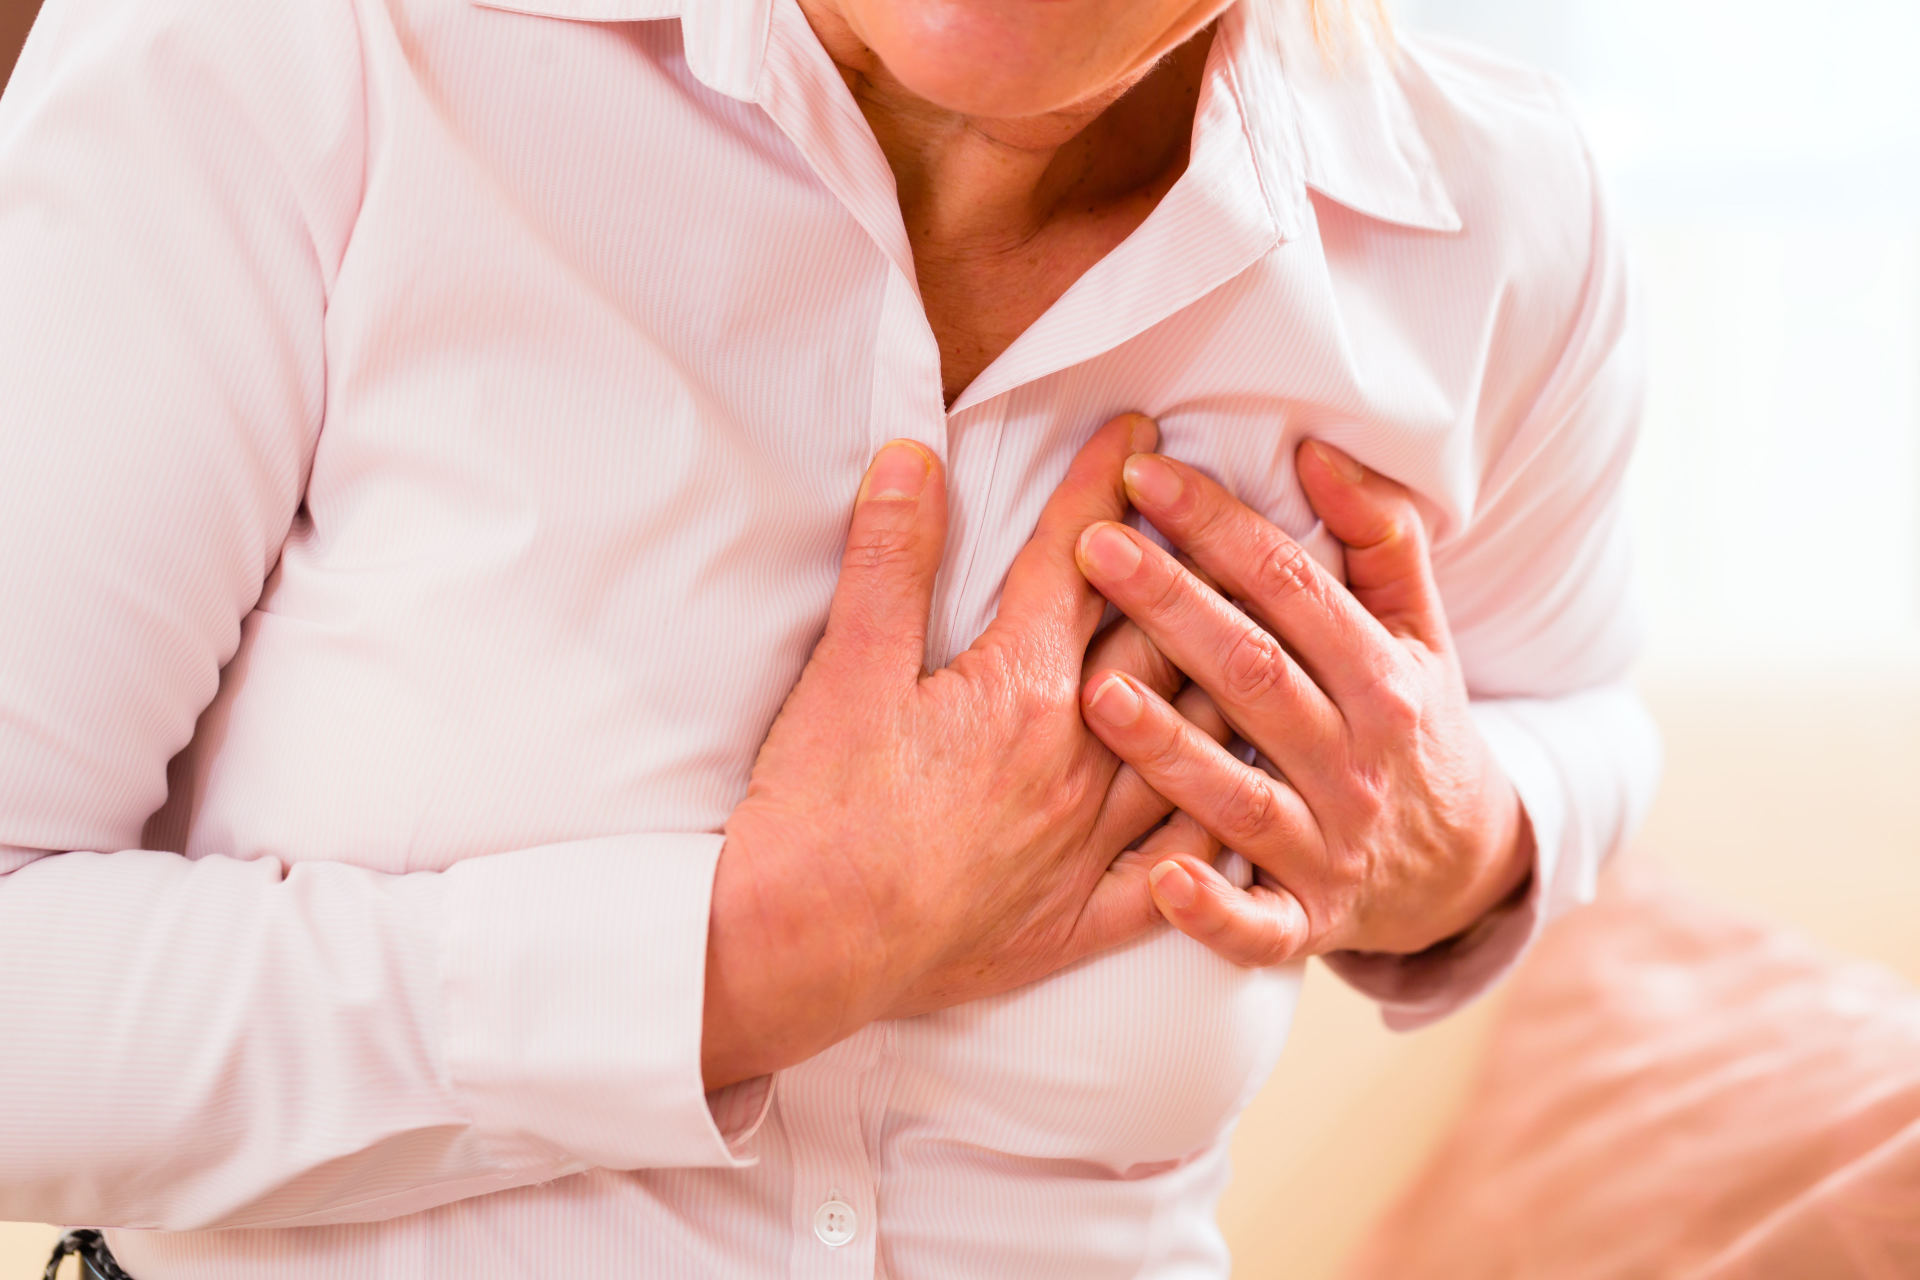 hipertenzija yra simptomas, o ne liga 5 būdai, kaip joga skatina širdies sveikatą